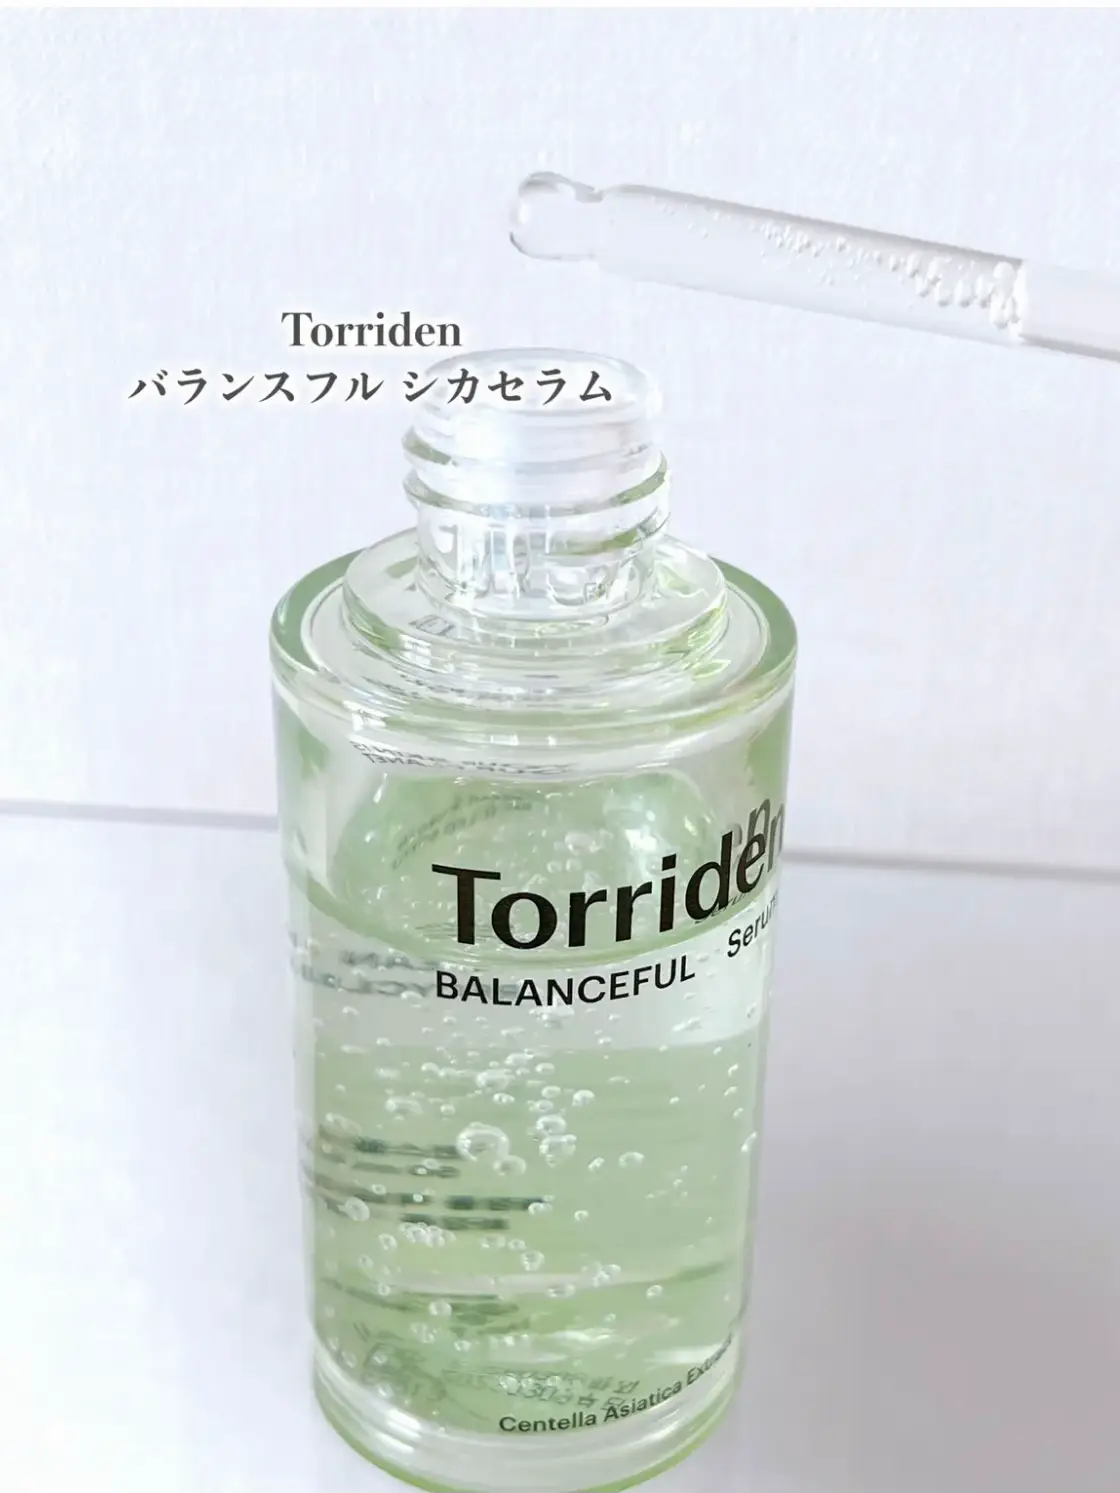 新品⭐︎ トリデン バランスフル シカセラム Torriden 美容液 基礎化粧品